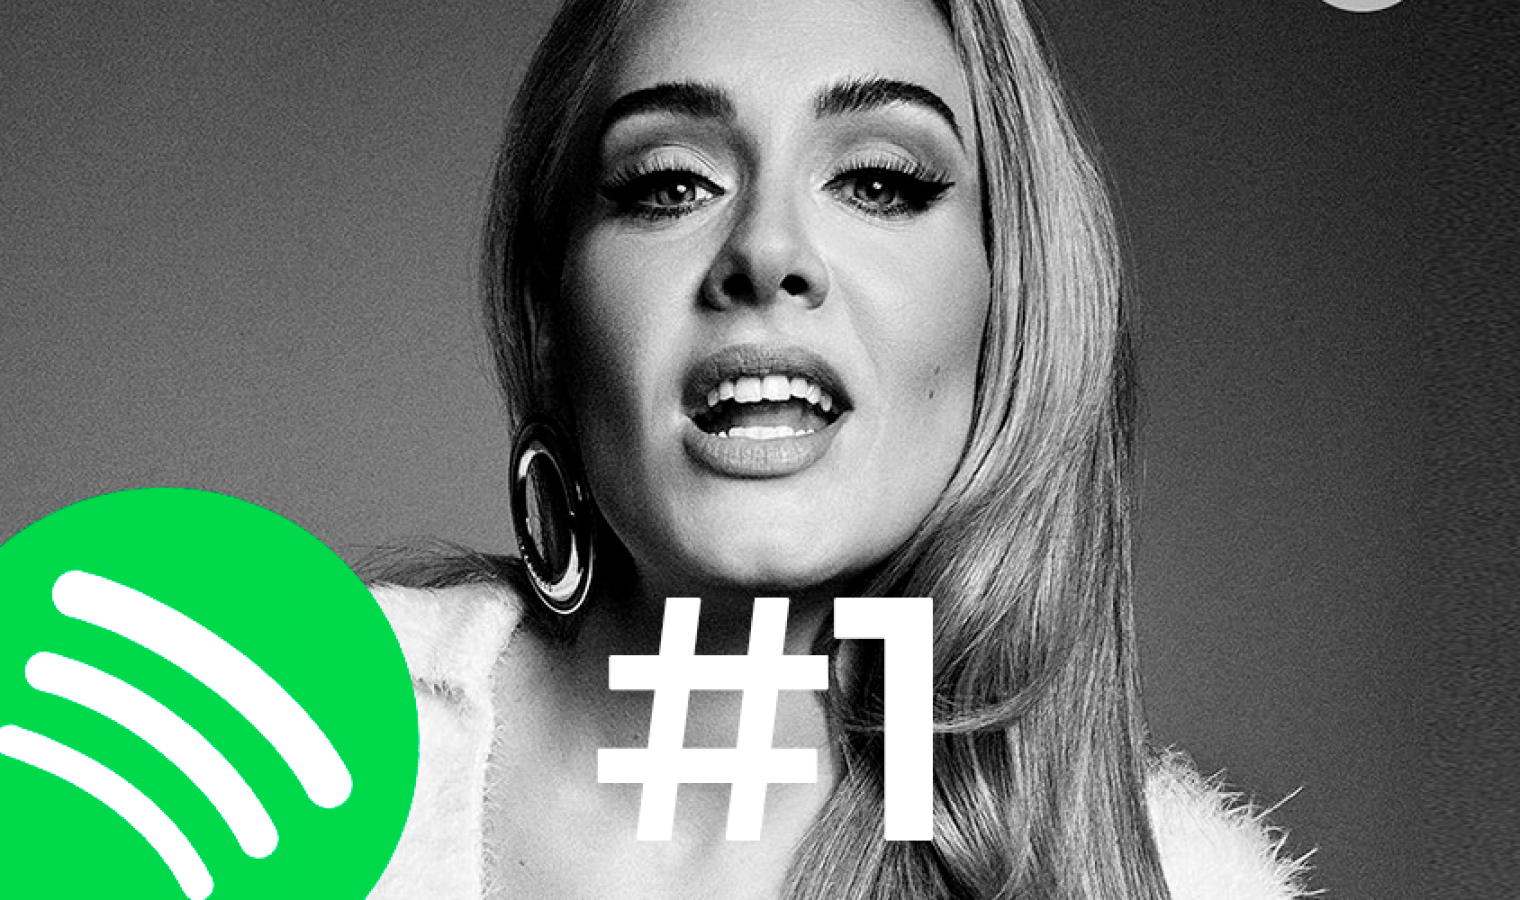 Adele quebra recorde mundial no Spotify com "Easy On Me", sendo a